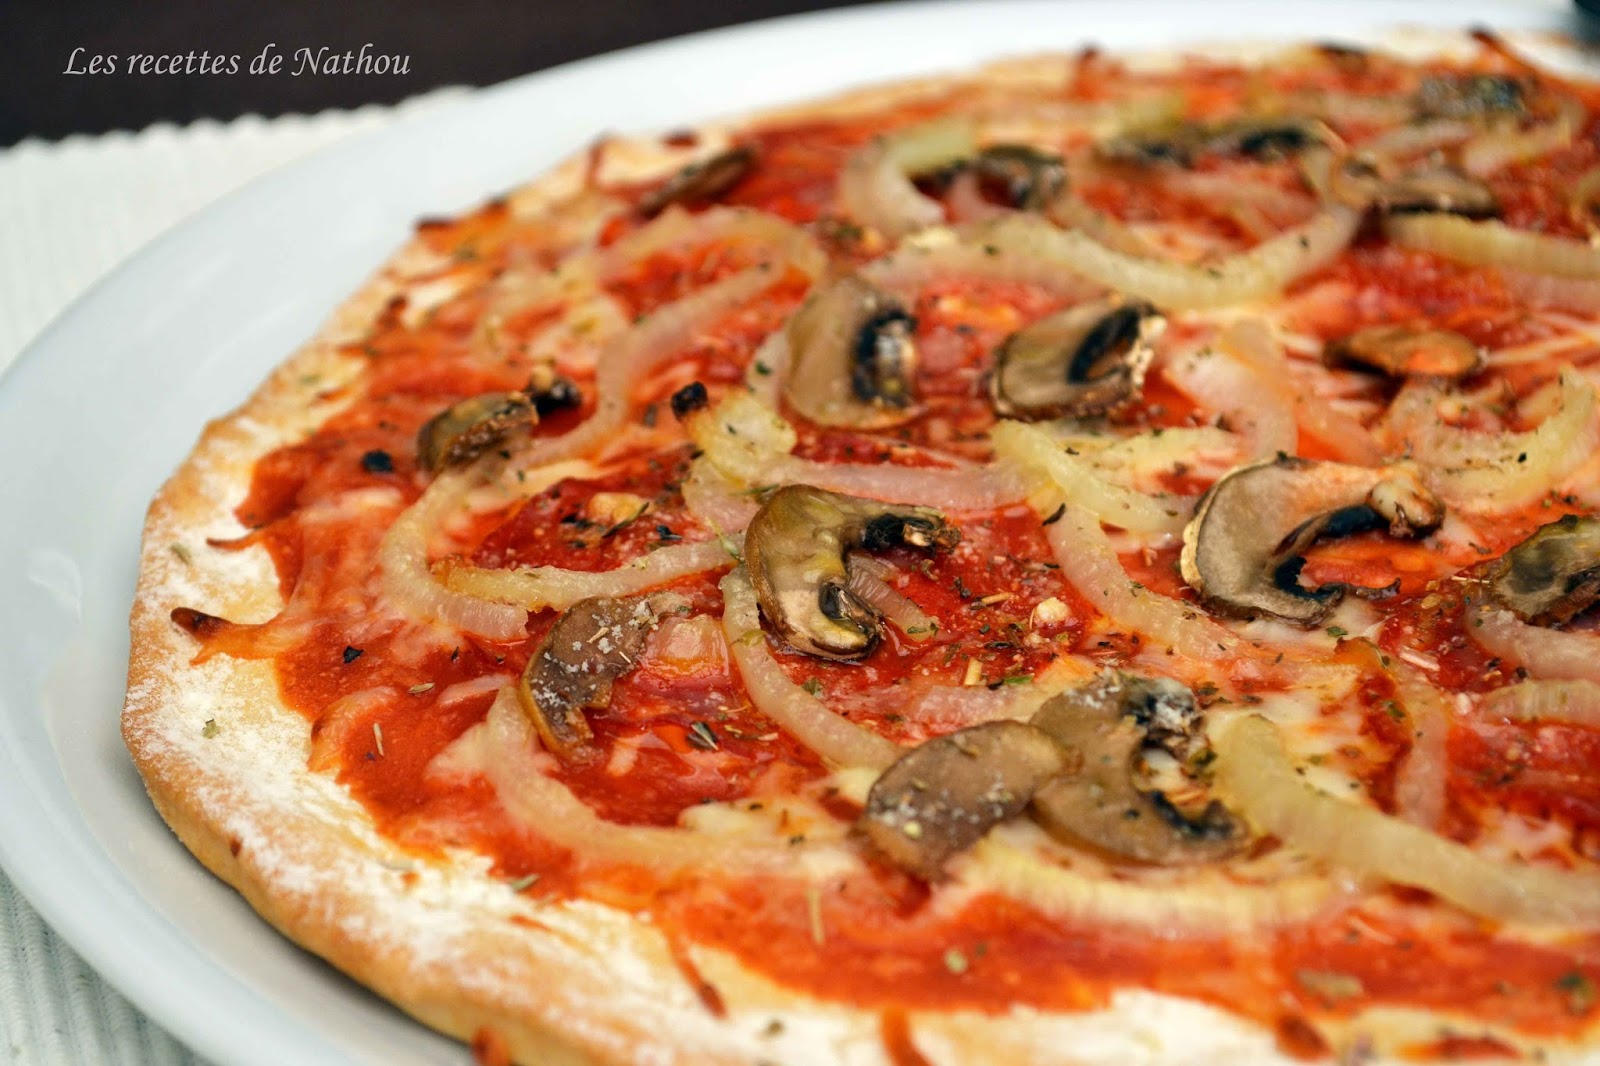 Ma cuisine au fil de mes idées...: Pizza volcana : salami piquant ...